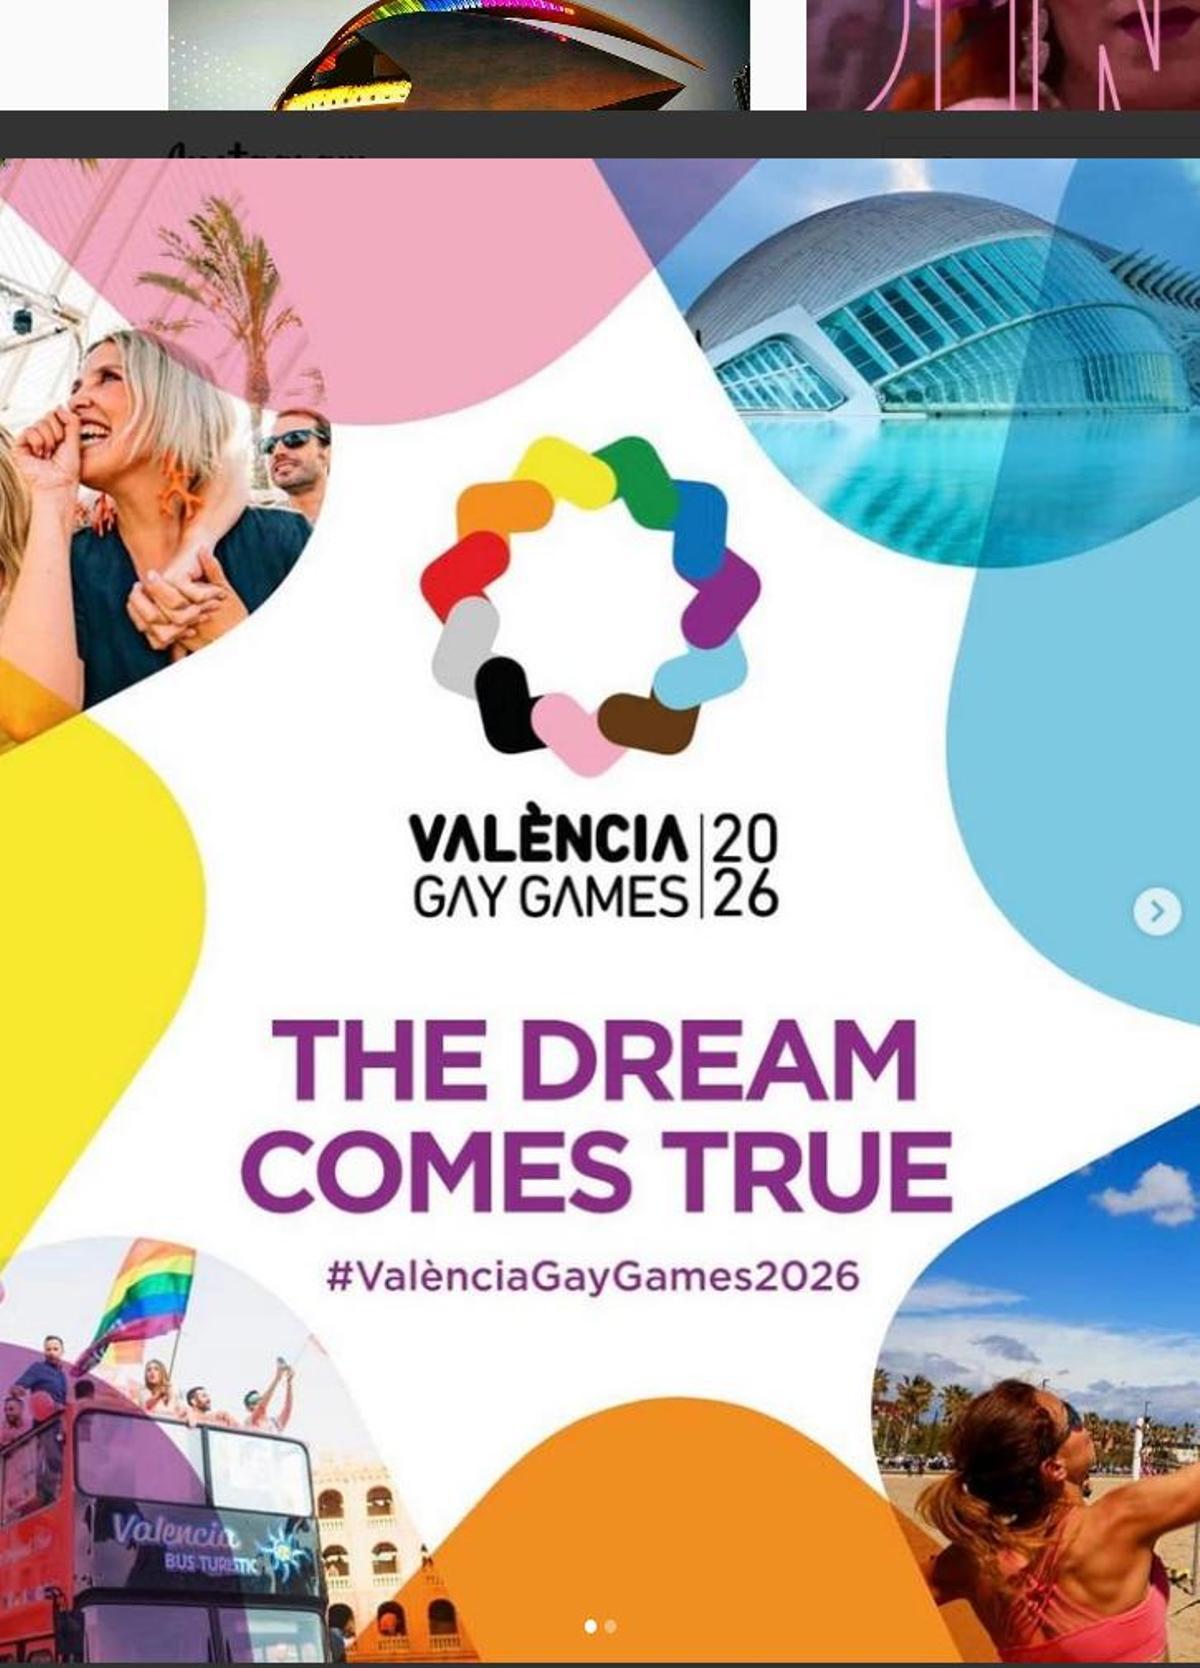 Cartel anunciador de los Gay Games 2026 en Valencia